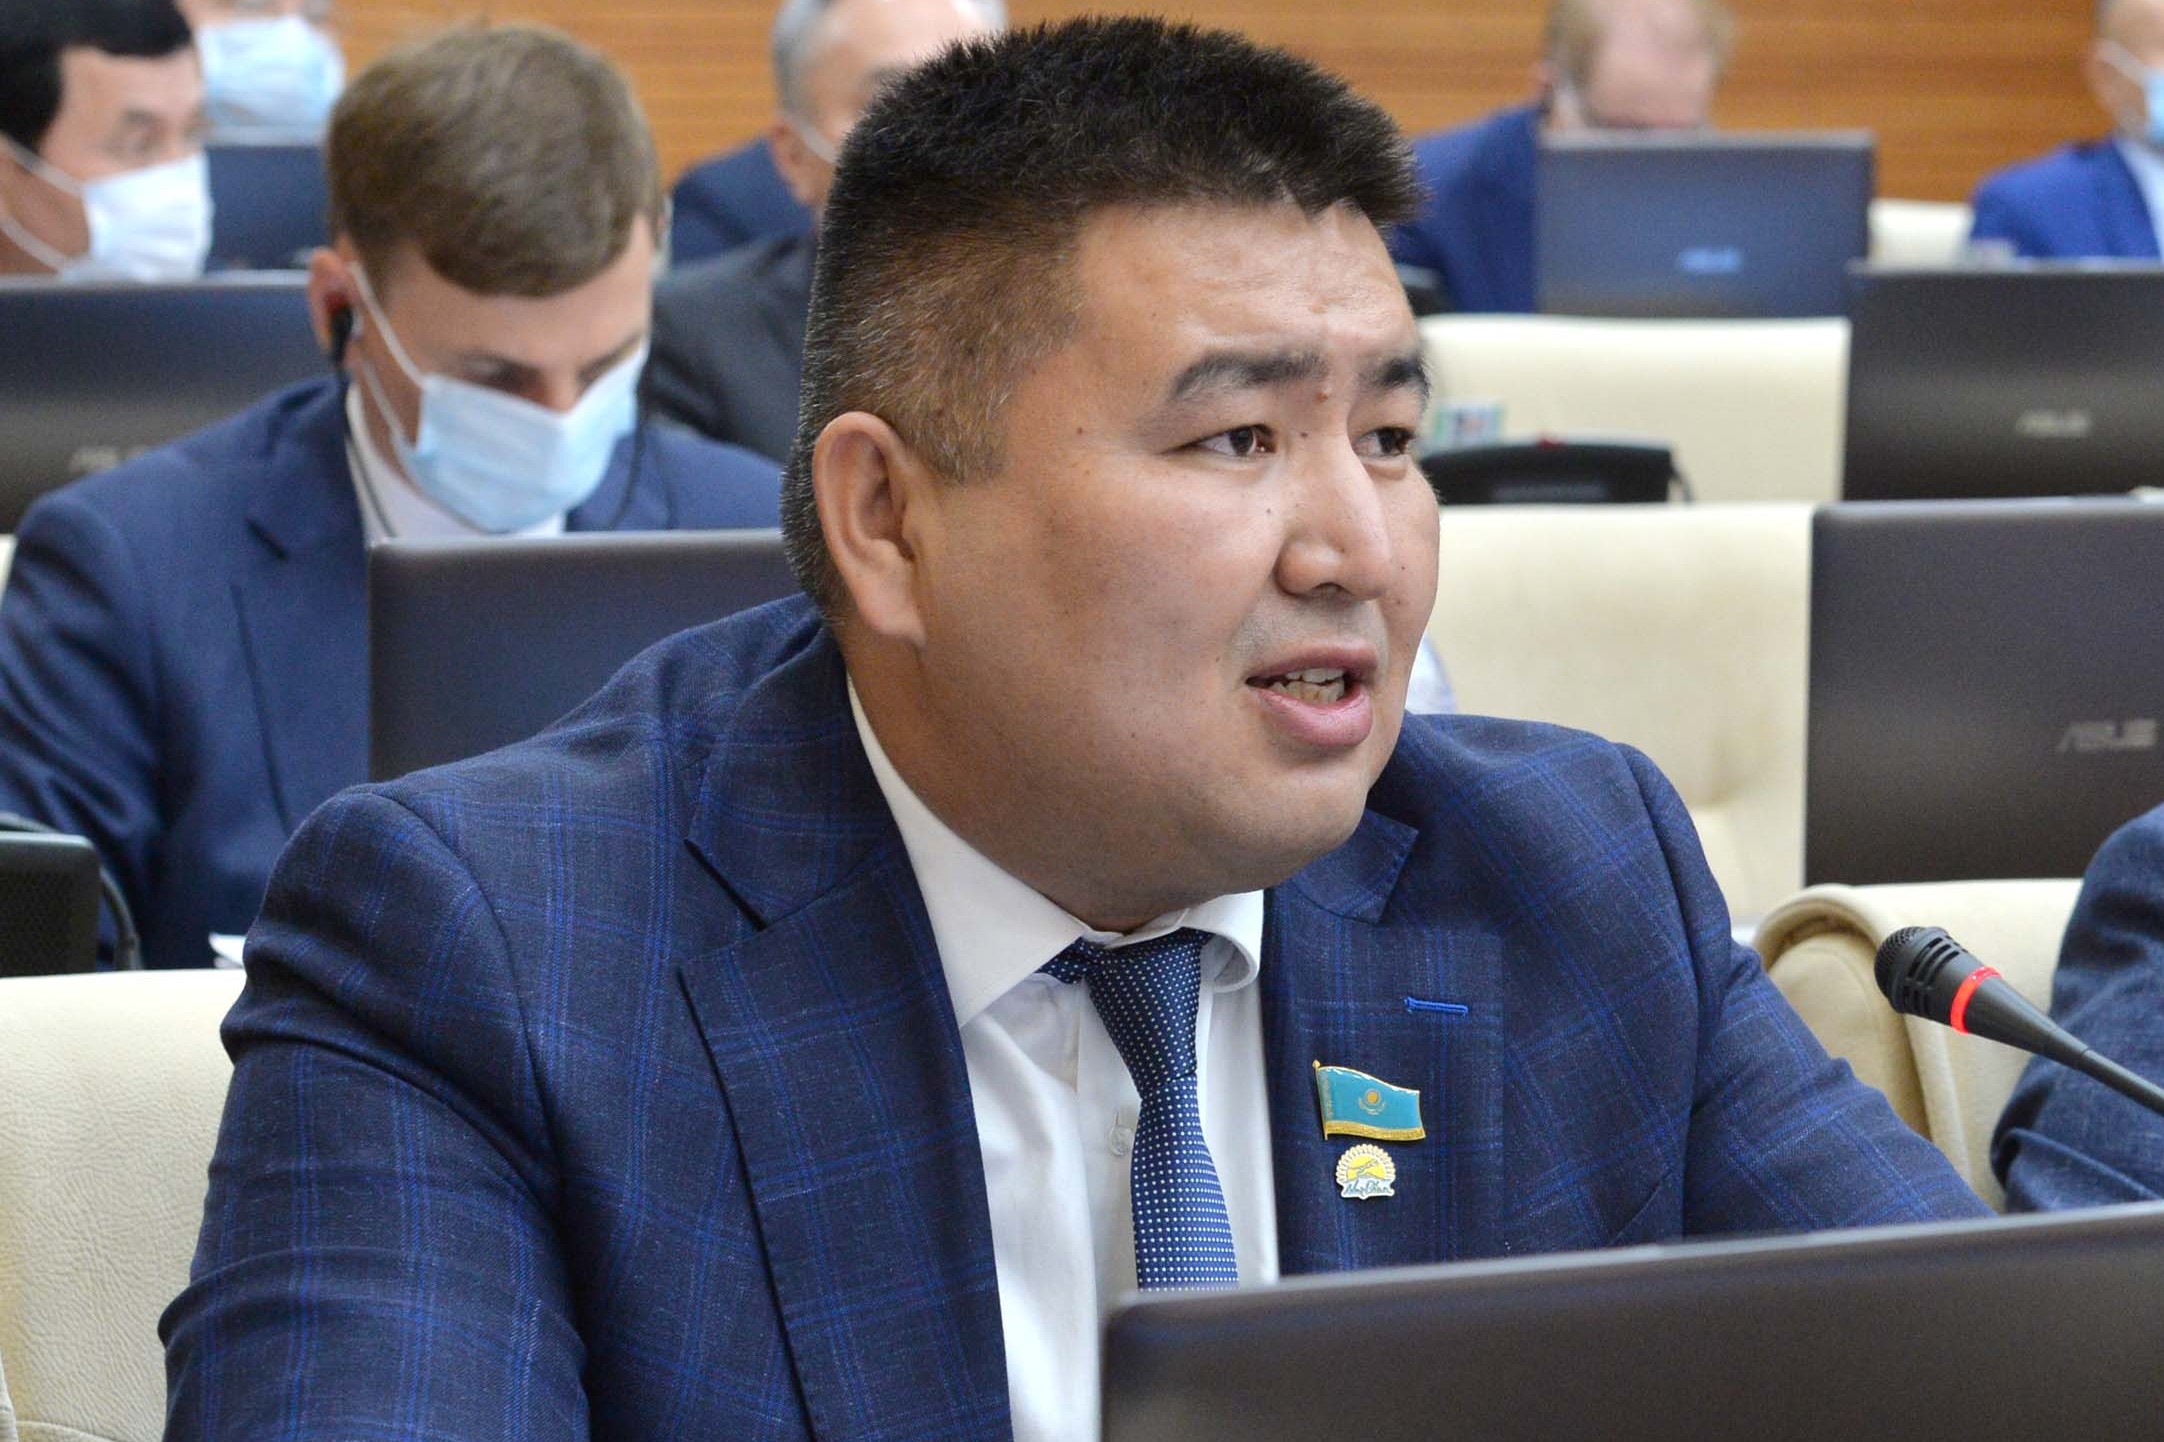 https://tengrinews.kz/kazakhstan_news/moshenniki-oformlyayut-kredityi-drugih-deputat-obratilsya-457848/